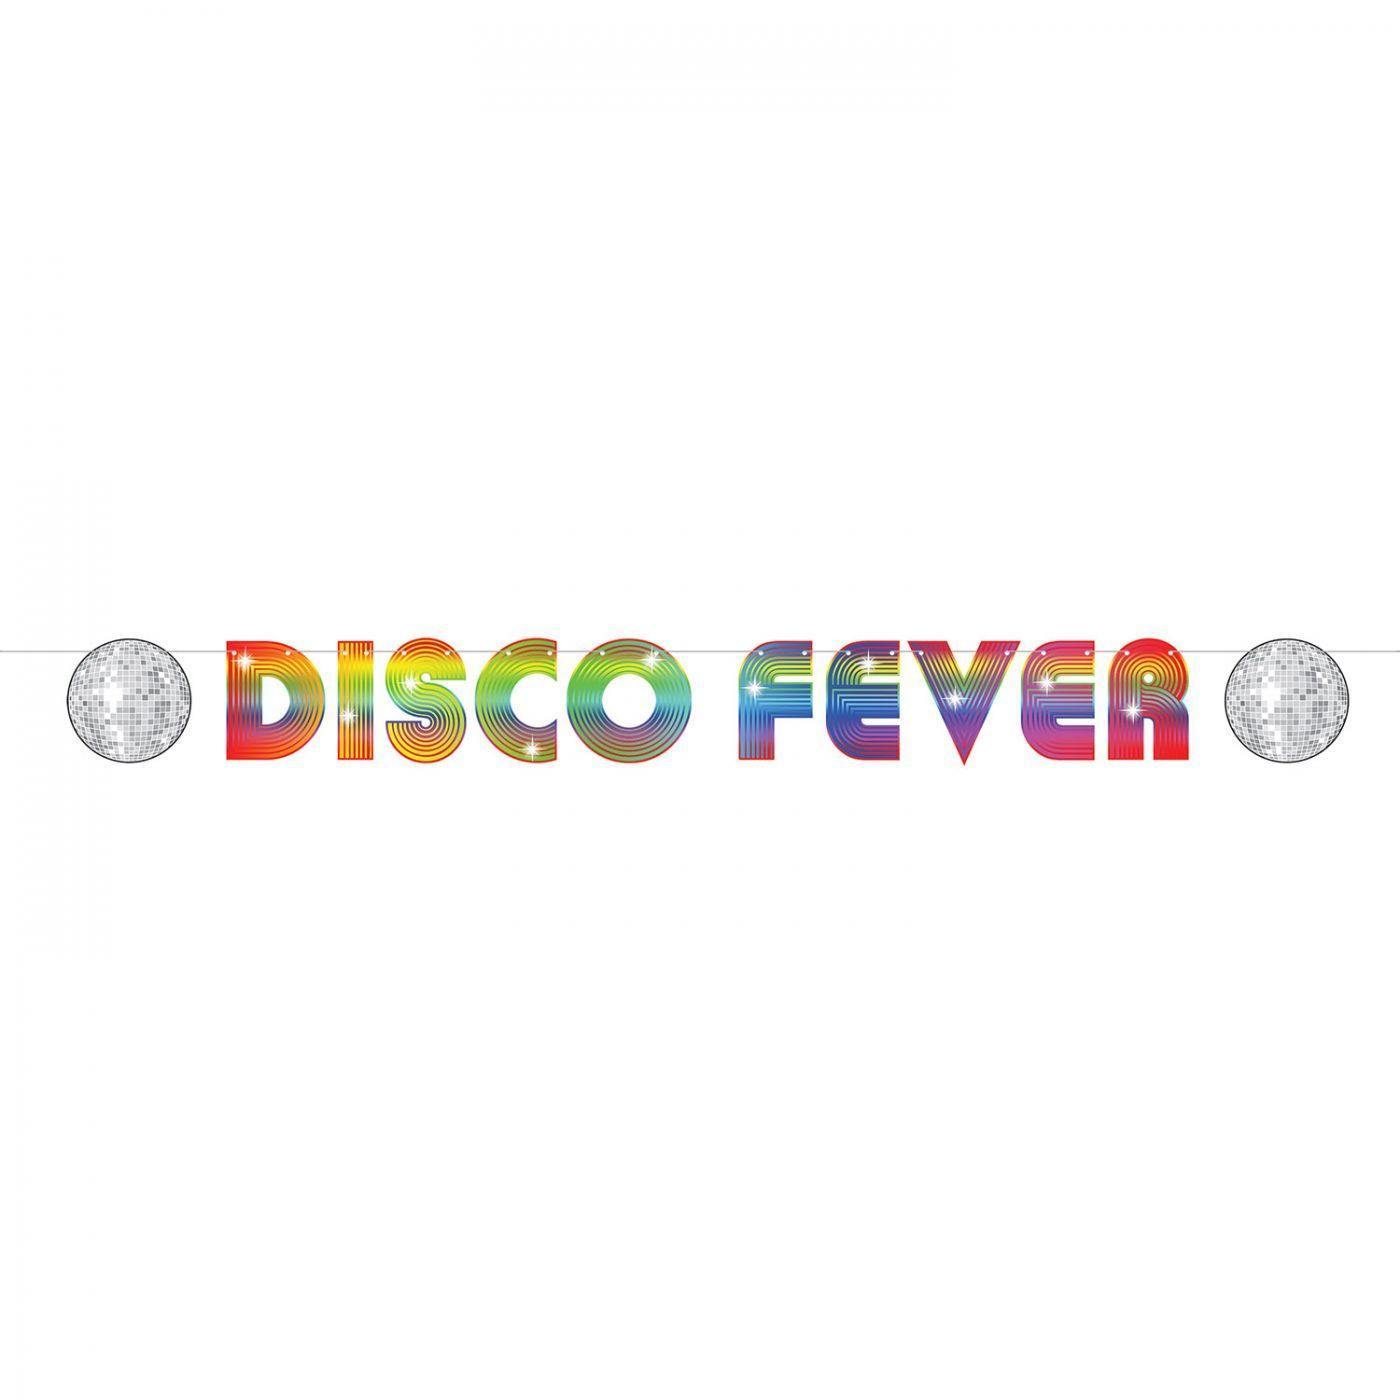 Viirinauha Disco fever - Art Move Store Oy